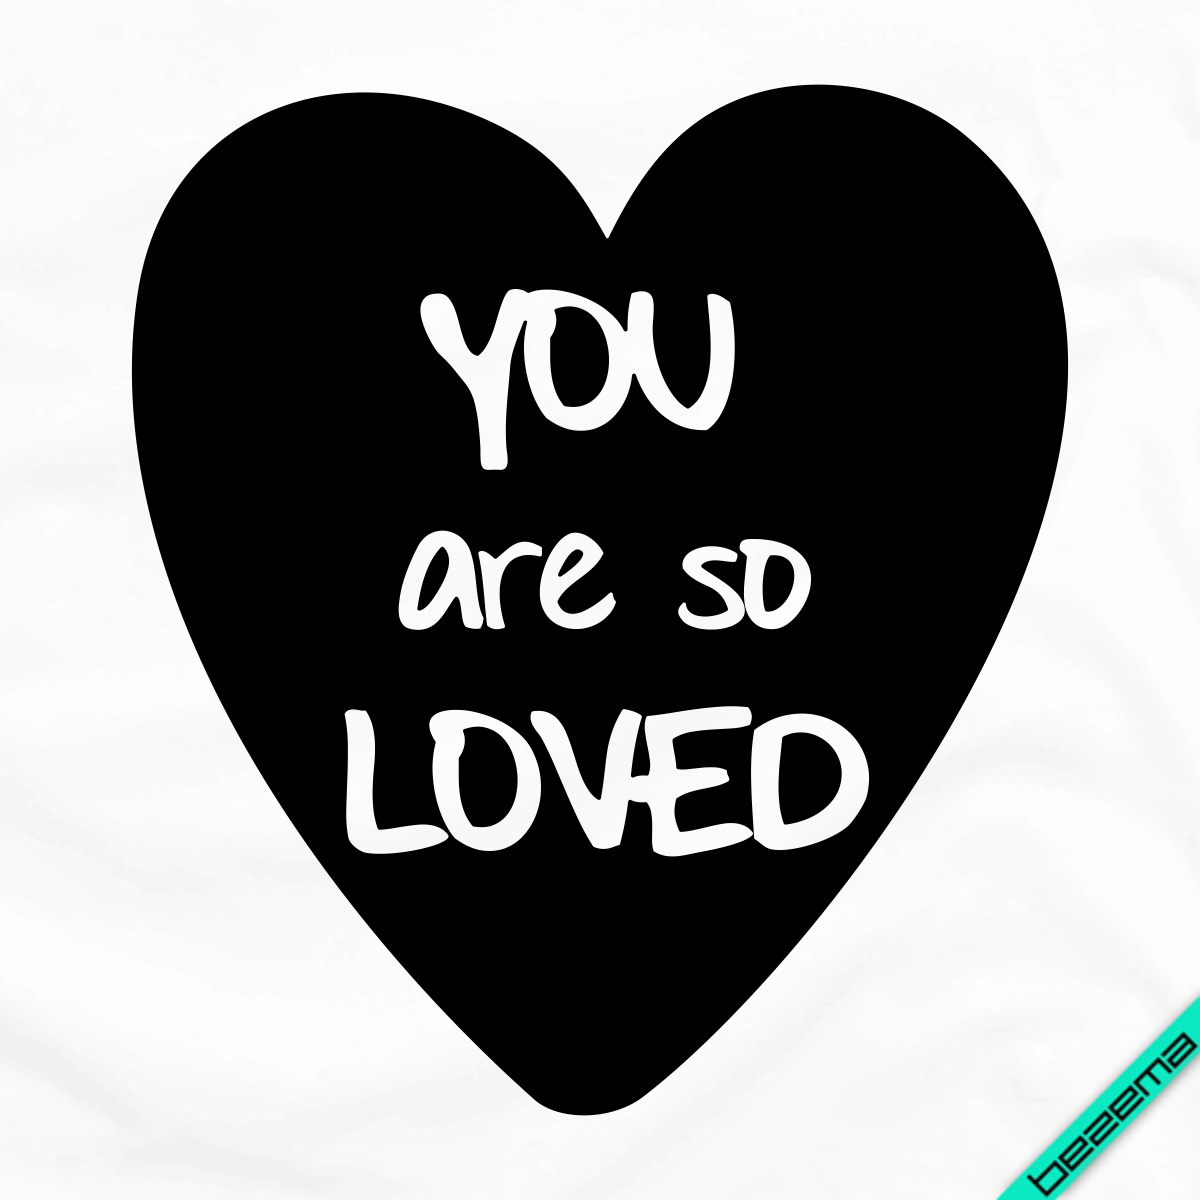 

Декор на ткань Сердце "You are so loved" [Свой размер и материалы в ассортименте]